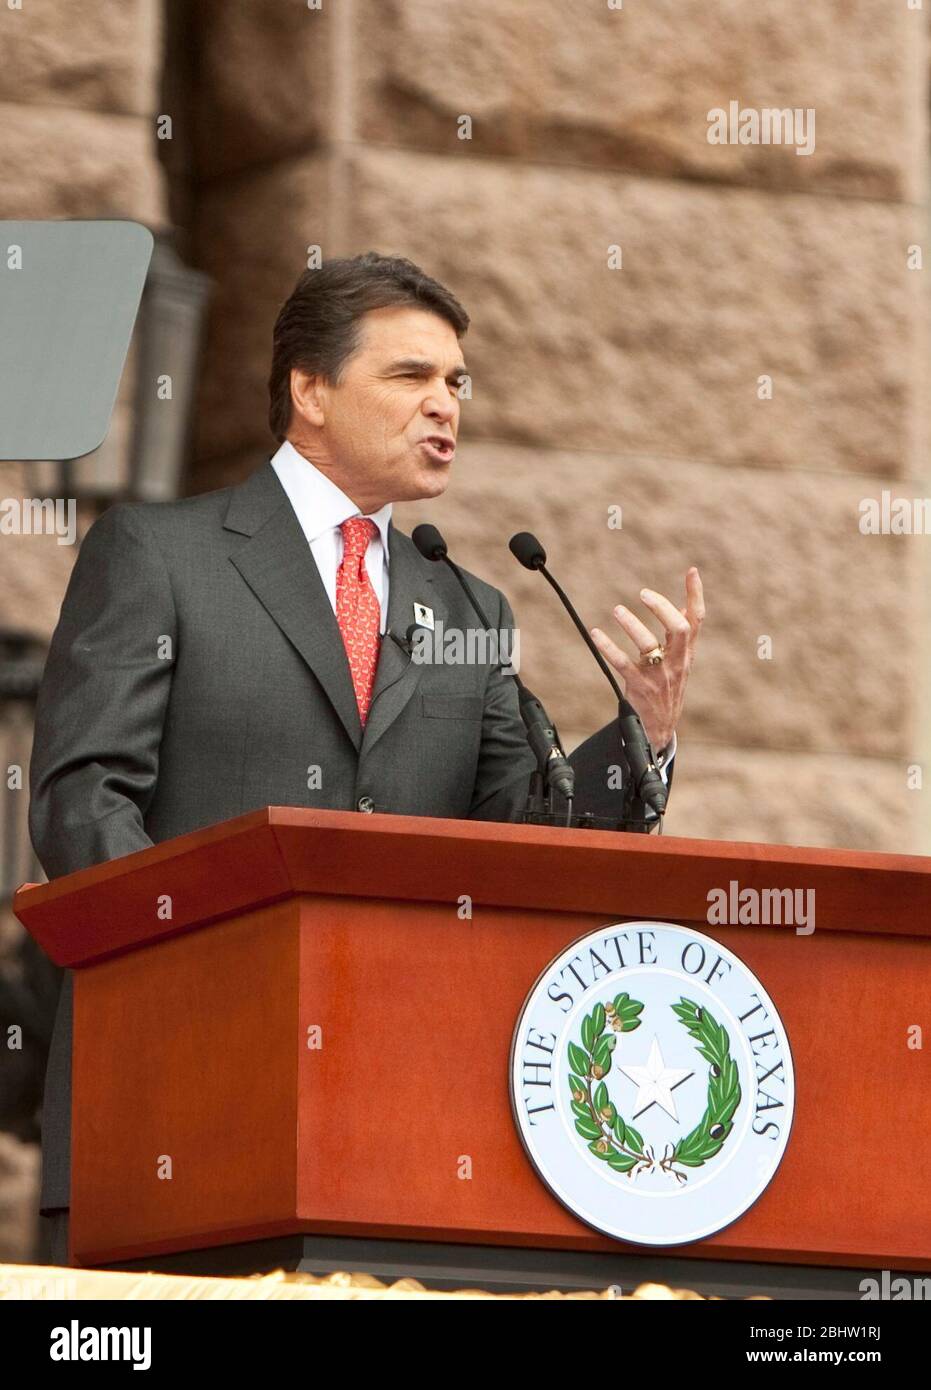 Austin, Texas, USA, 18. Januar 2011: Der texanische Gouverneur Rick Perry spricht, nachdem er für seine dritte volle Amtszeit als Gouverneur vereidigt wurde. Marjorie Kamys Cotera/Daemmrich Photography Stockfoto